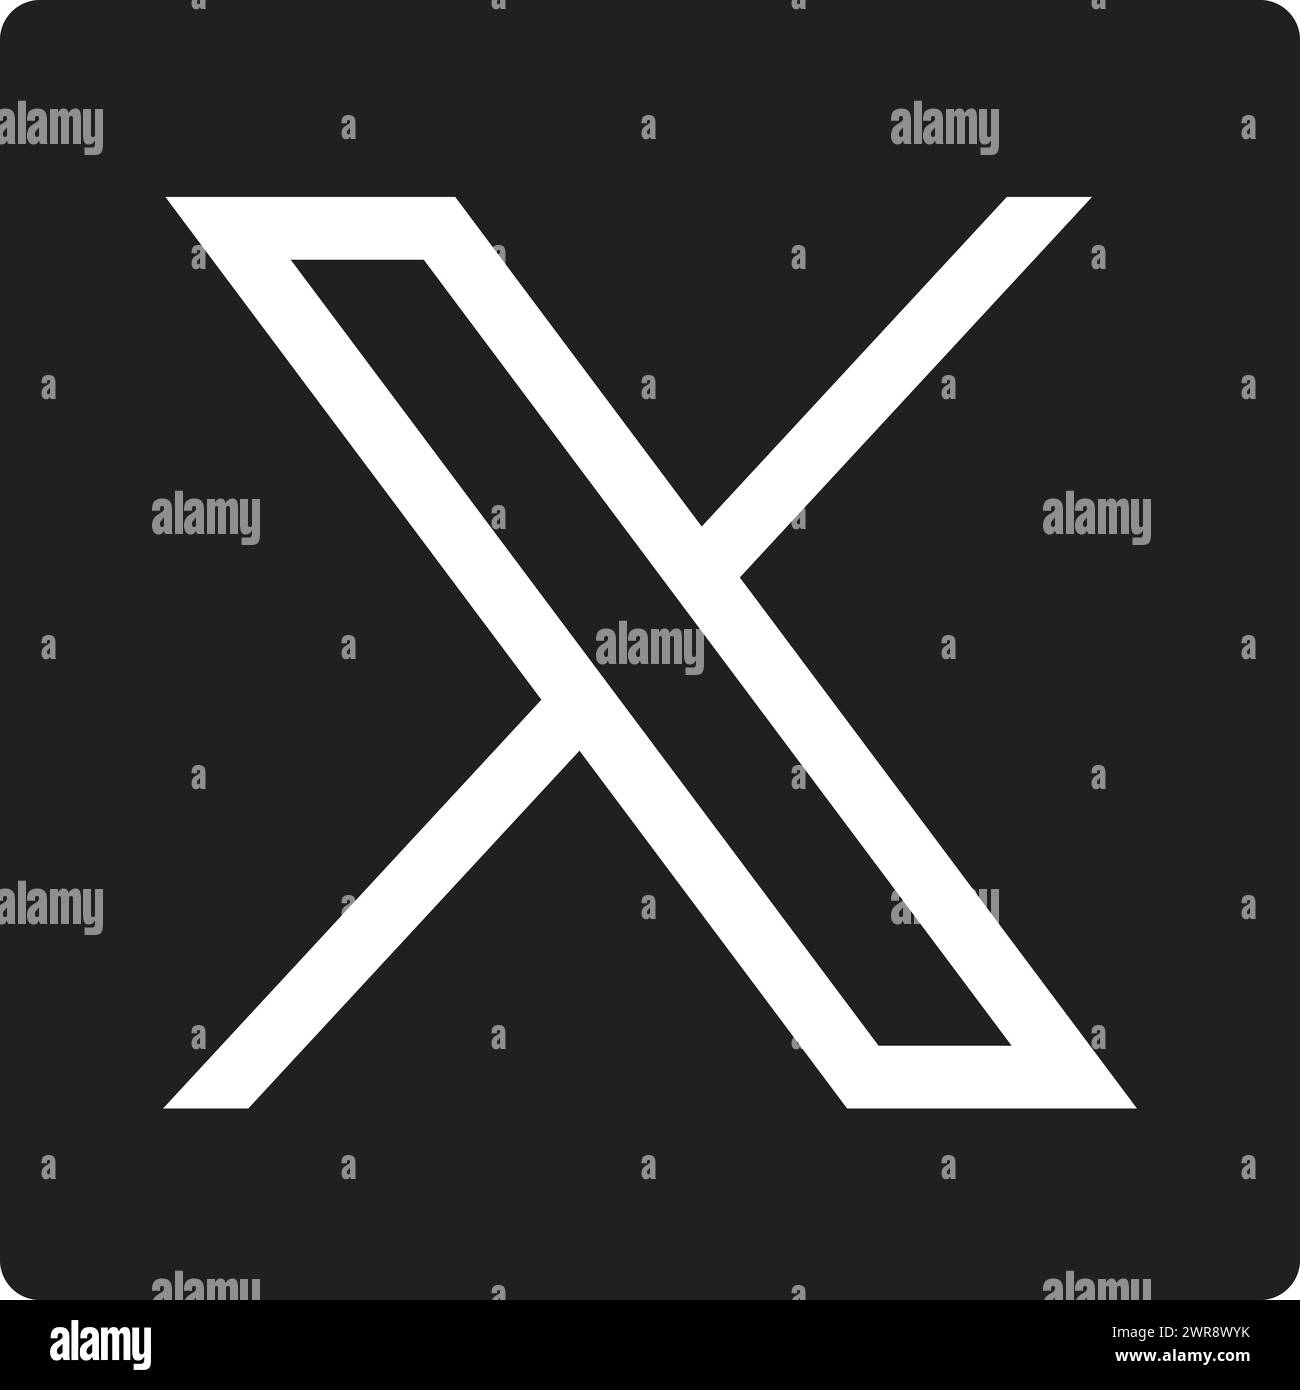 X logo Rectangle, Twitter X logo, twitter logo, Twitter icons Stock Vector